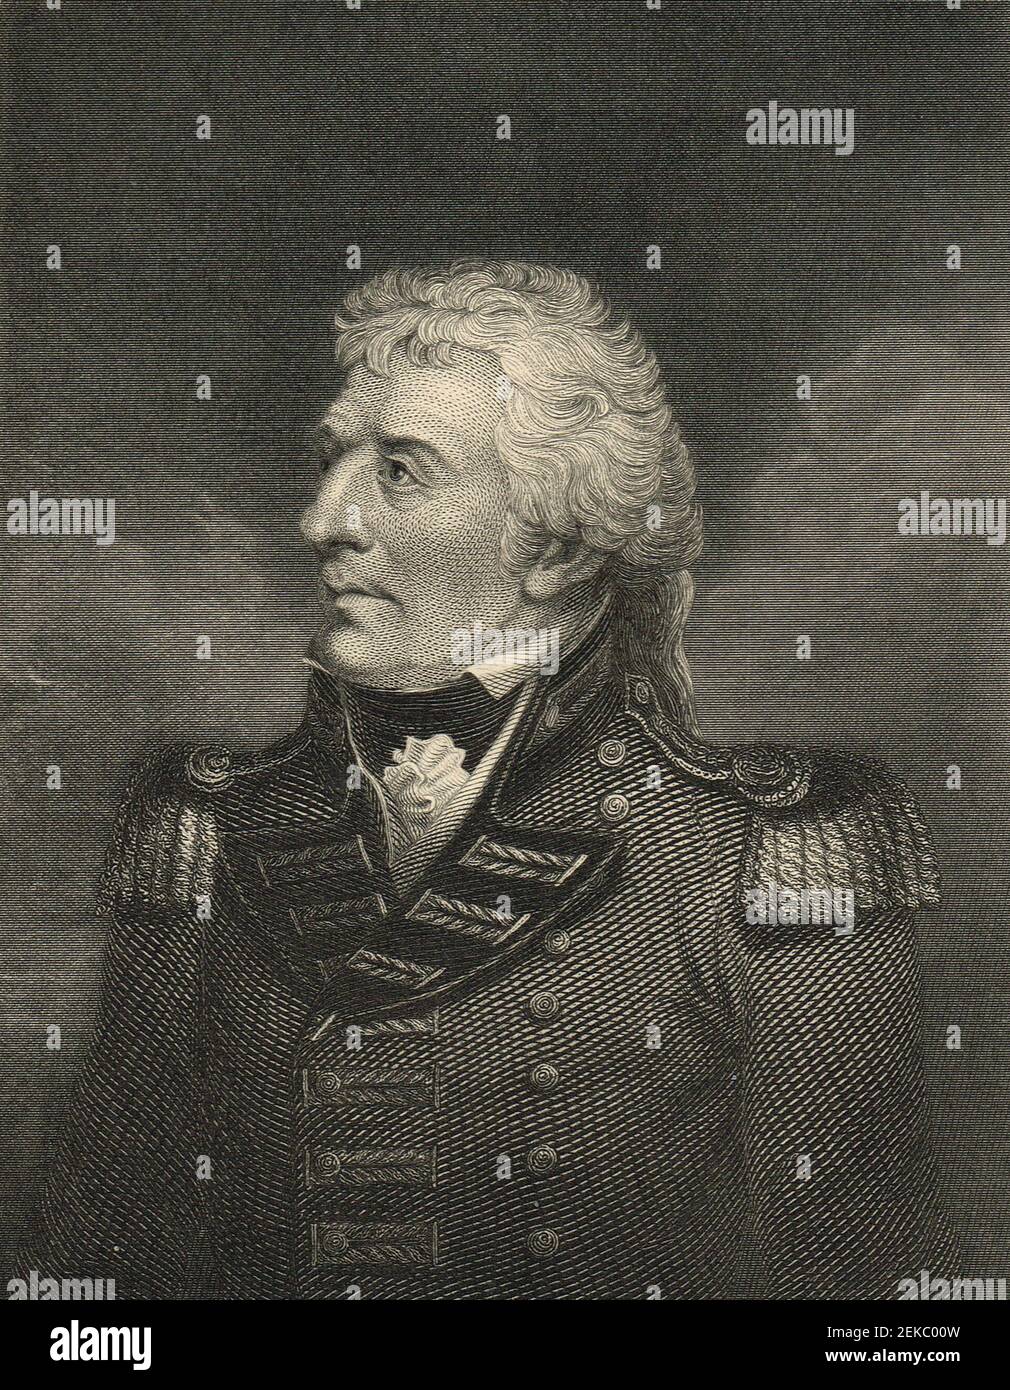 Gerard Lake, 1 de Viscount Lake, (27 de julio de 1744 – 20 de febrero de 1808), fue un general británico. Comandó las fuerzas británicas durante la rebelión irlandesa de 1798, y más tarde sirvió como Comandante en Jefe de los militares en la India británica. Foto de stock